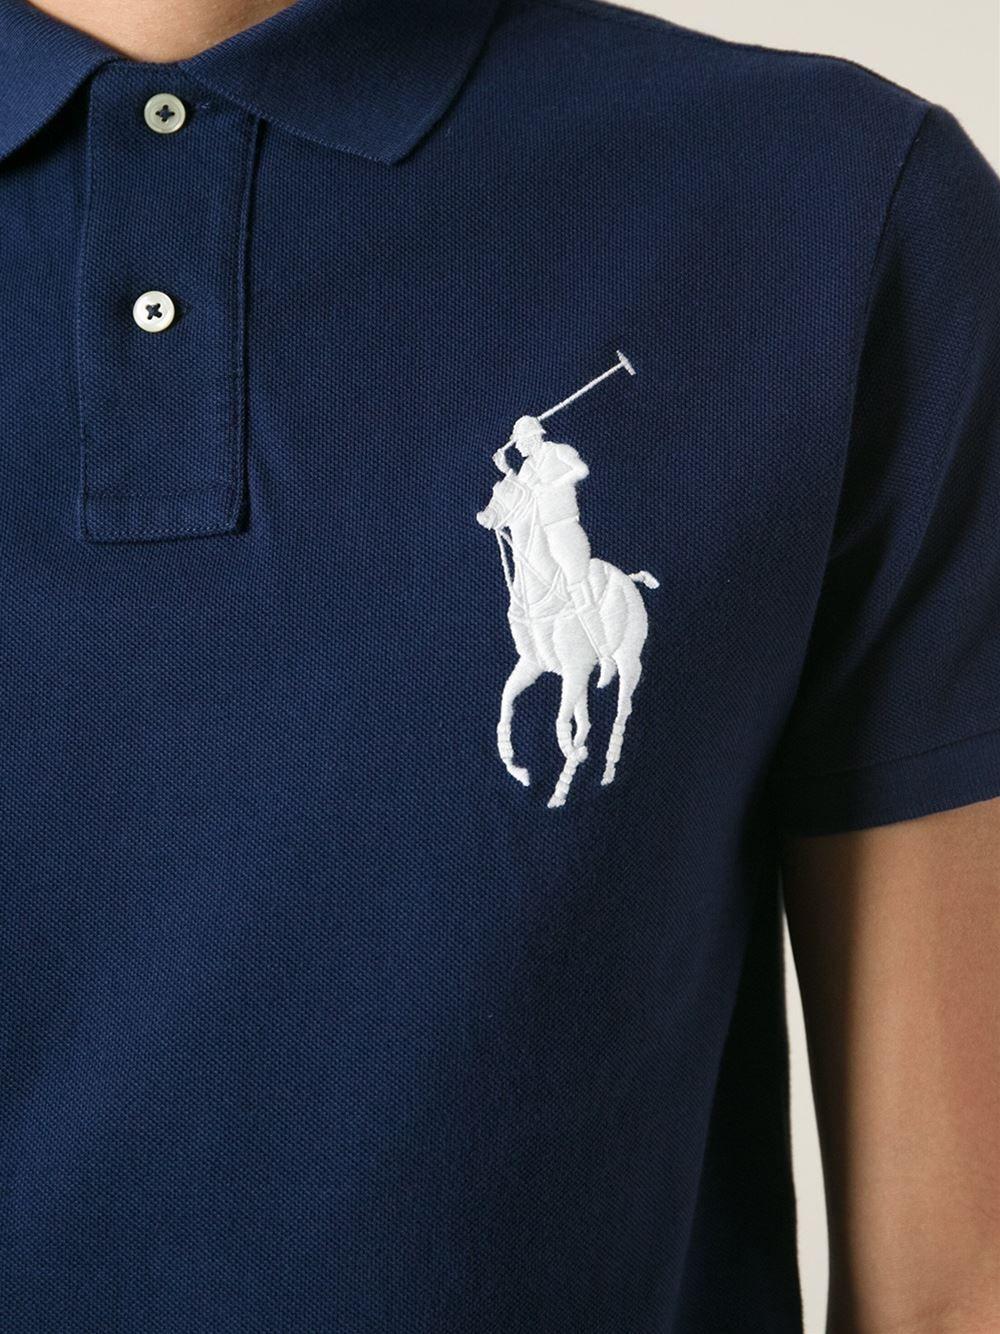 Polo Shirt Logo - Polo Shirts Logos